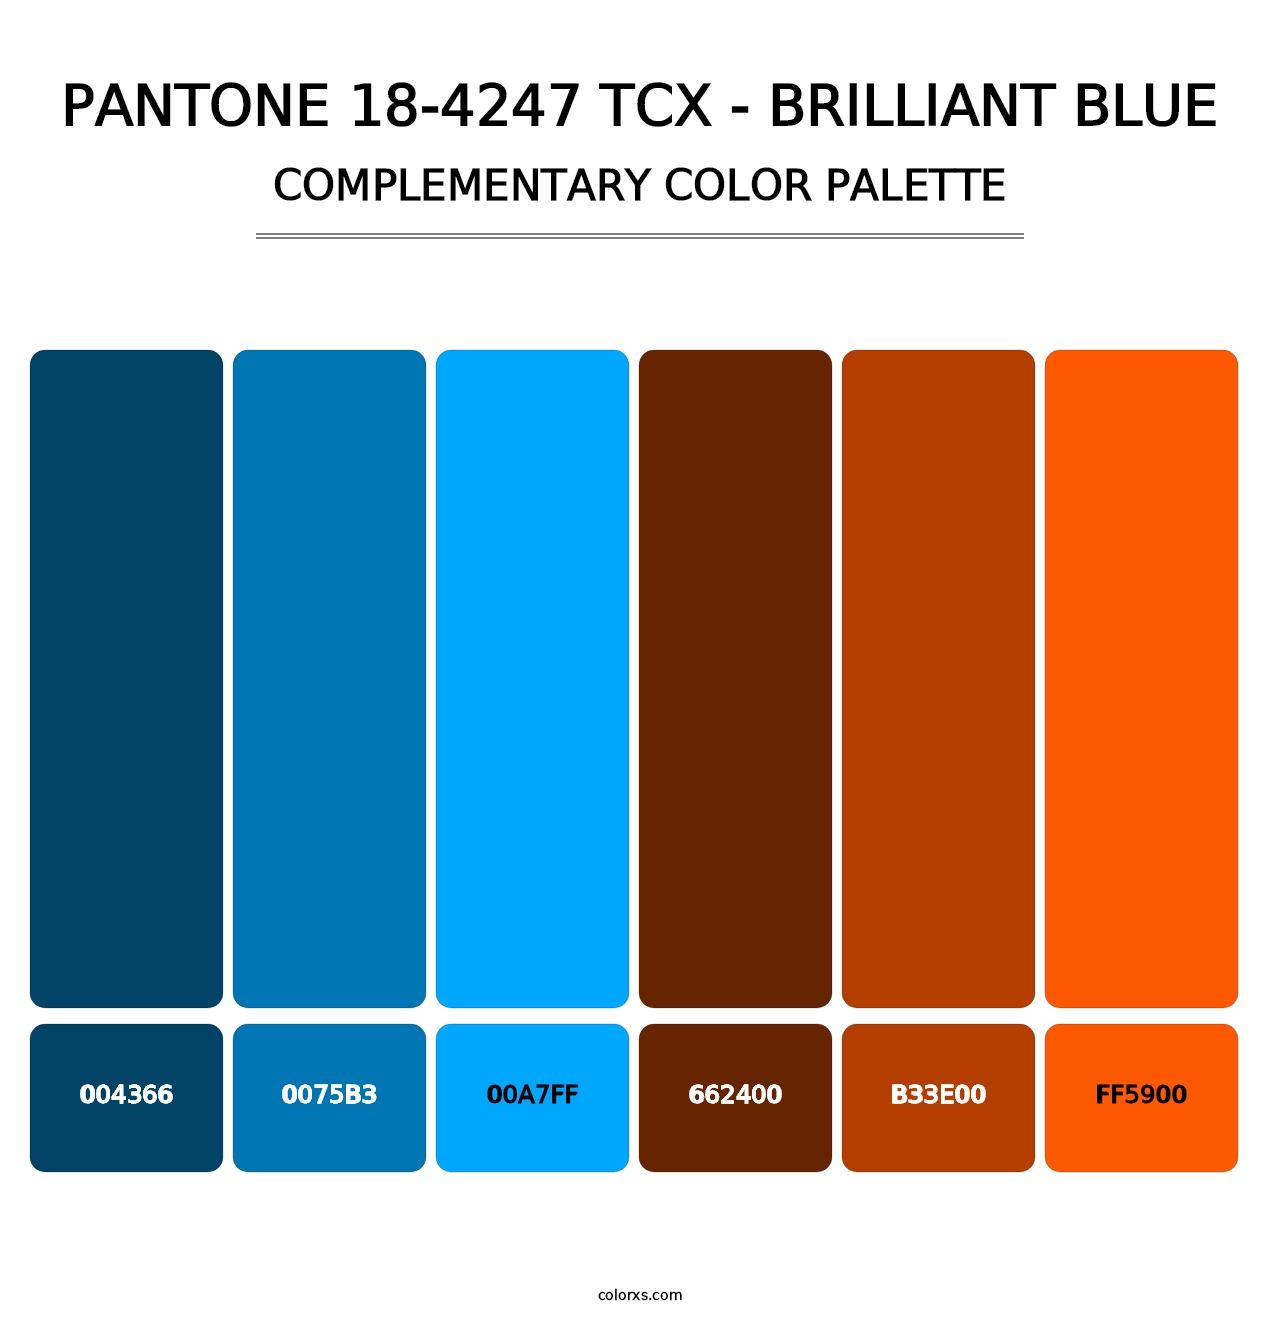 PANTONE 18-4247 TCX - Brilliant Blue - Complementary Color Palette